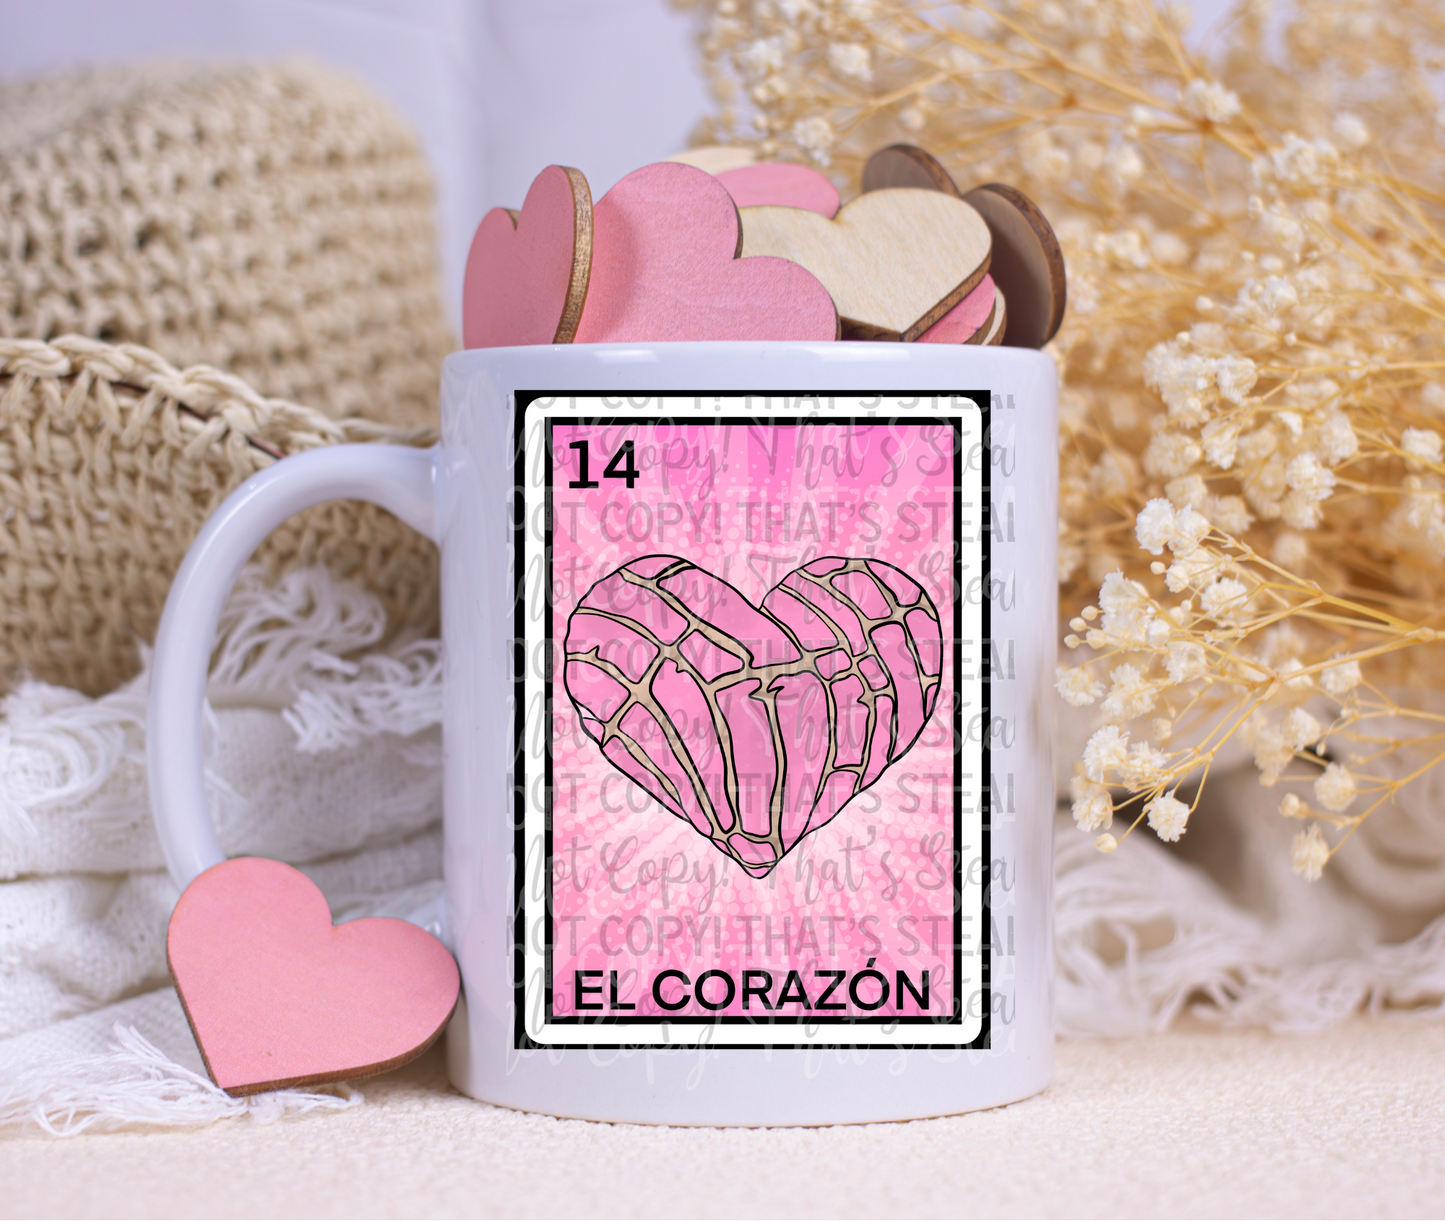 El corazon 15 oz. coffee mug. -Mayan Sub Shop